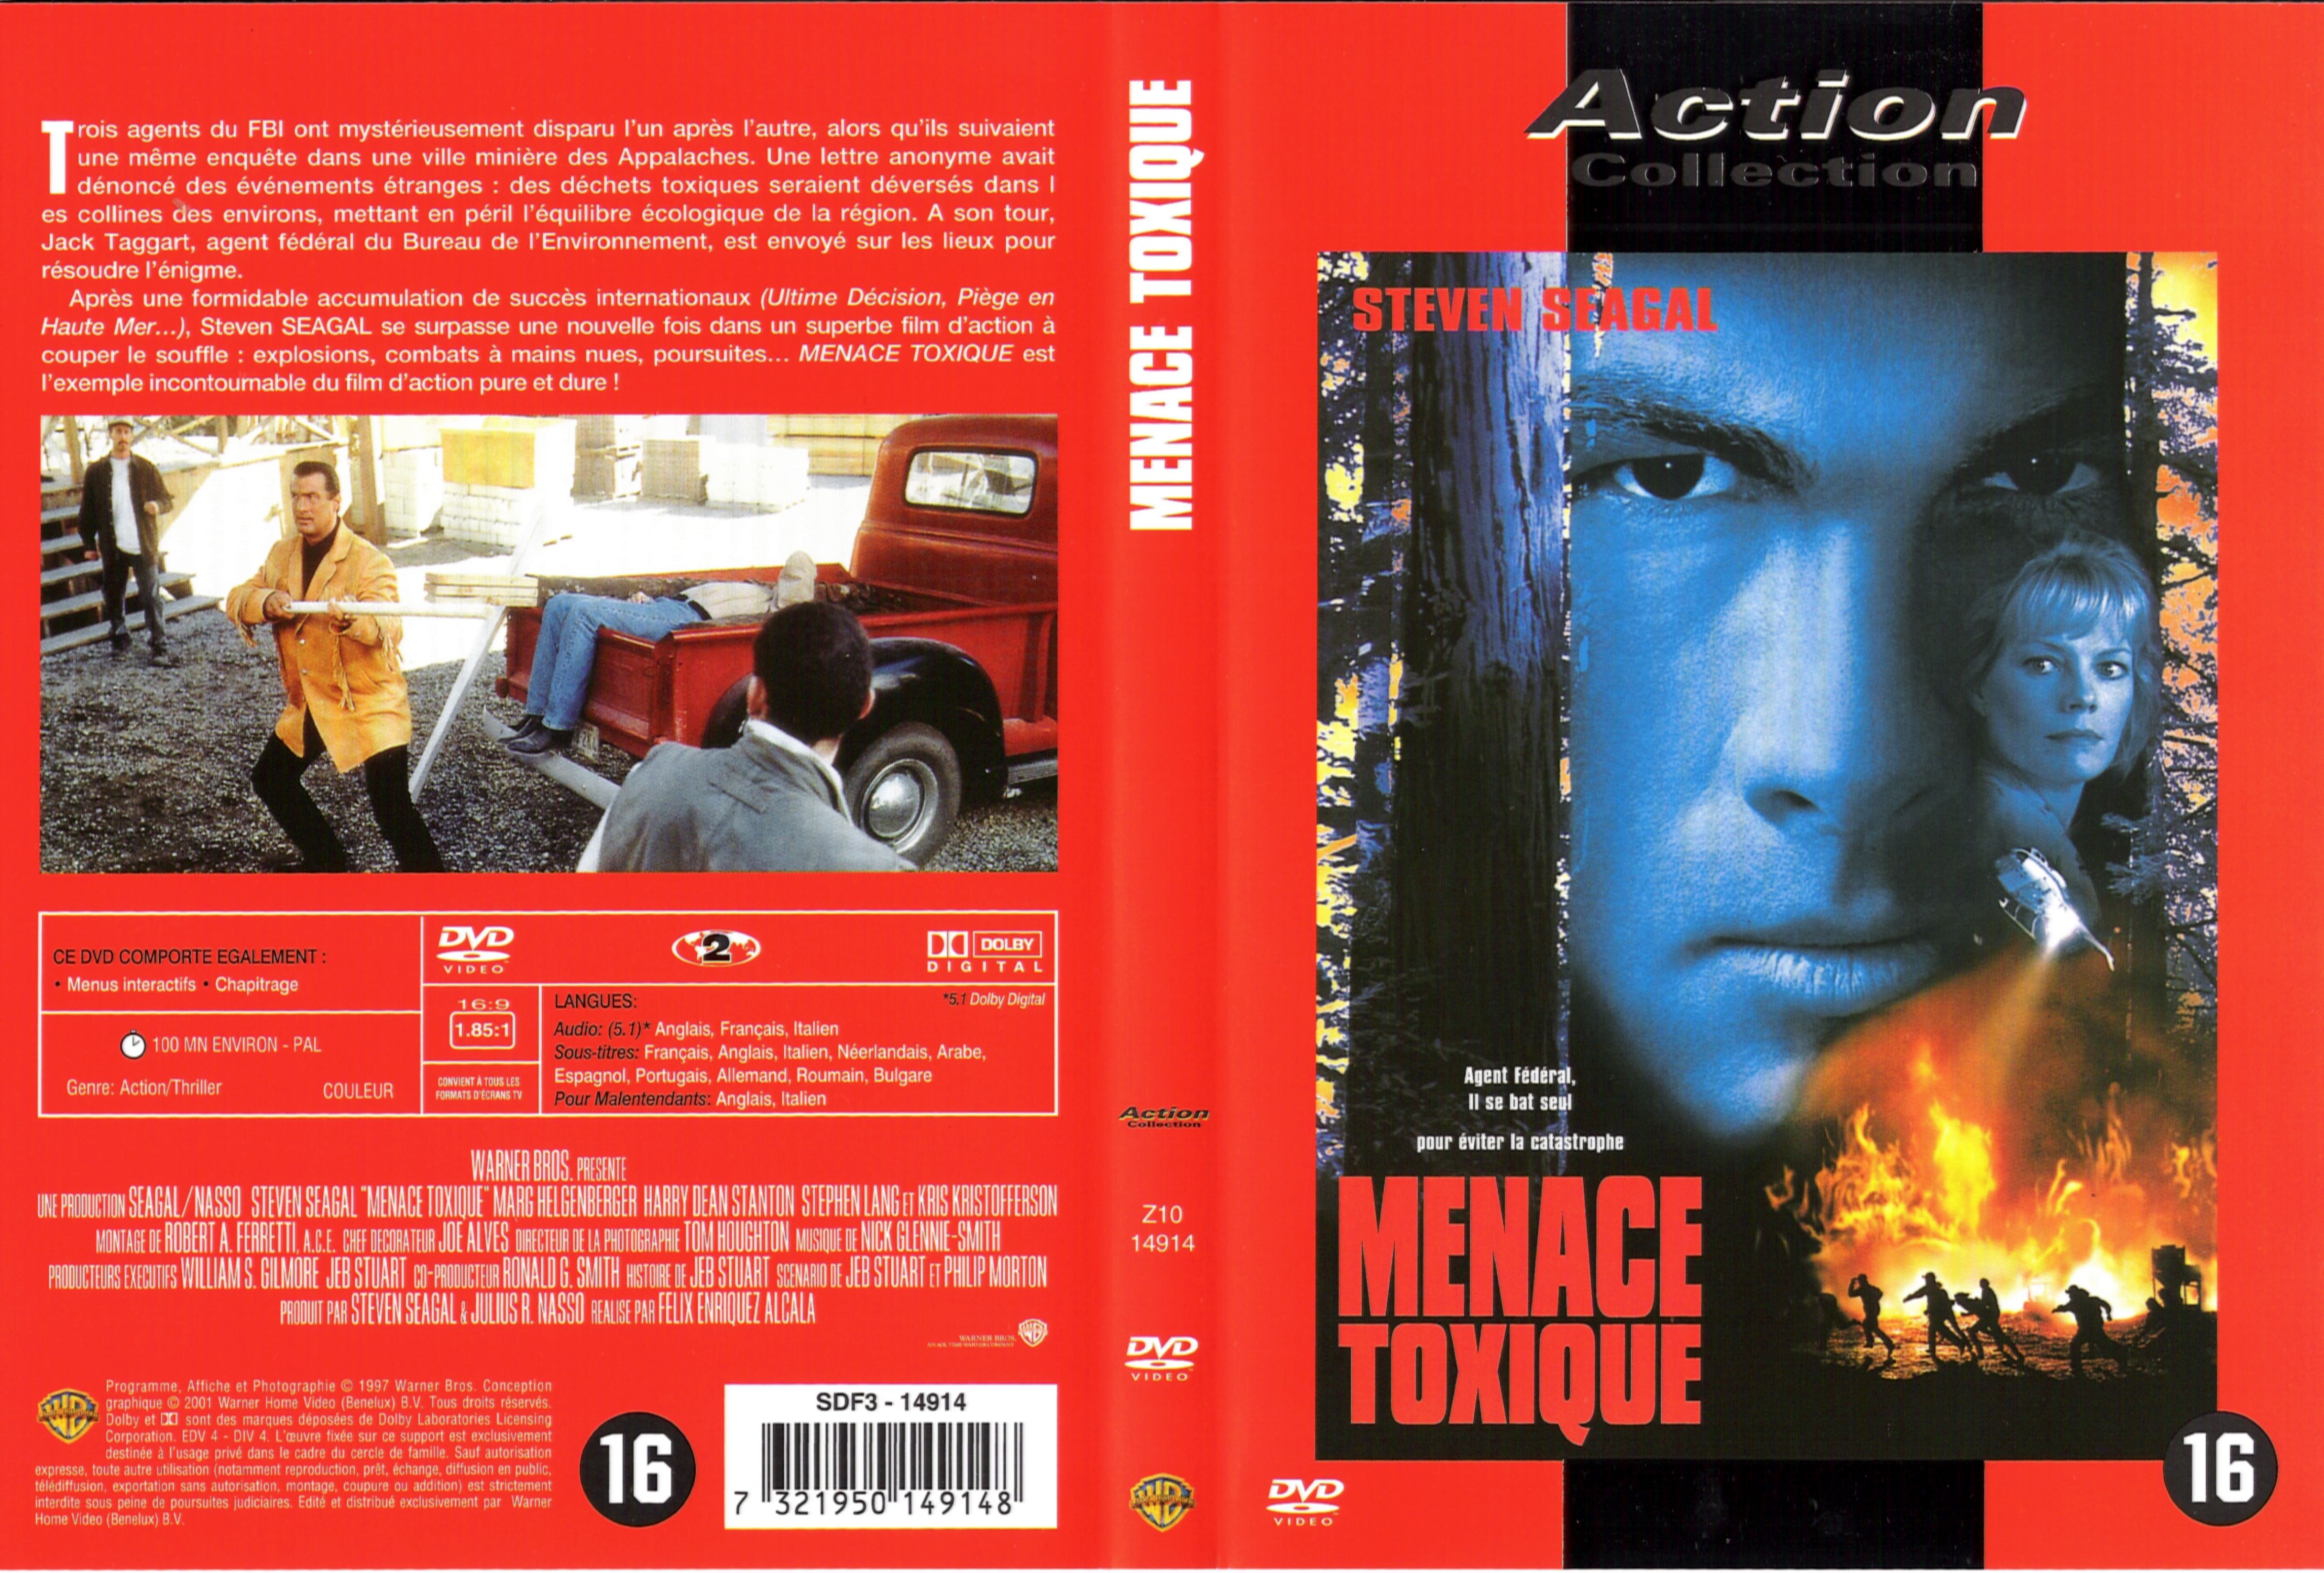 Jaquette DVD Menace toxique